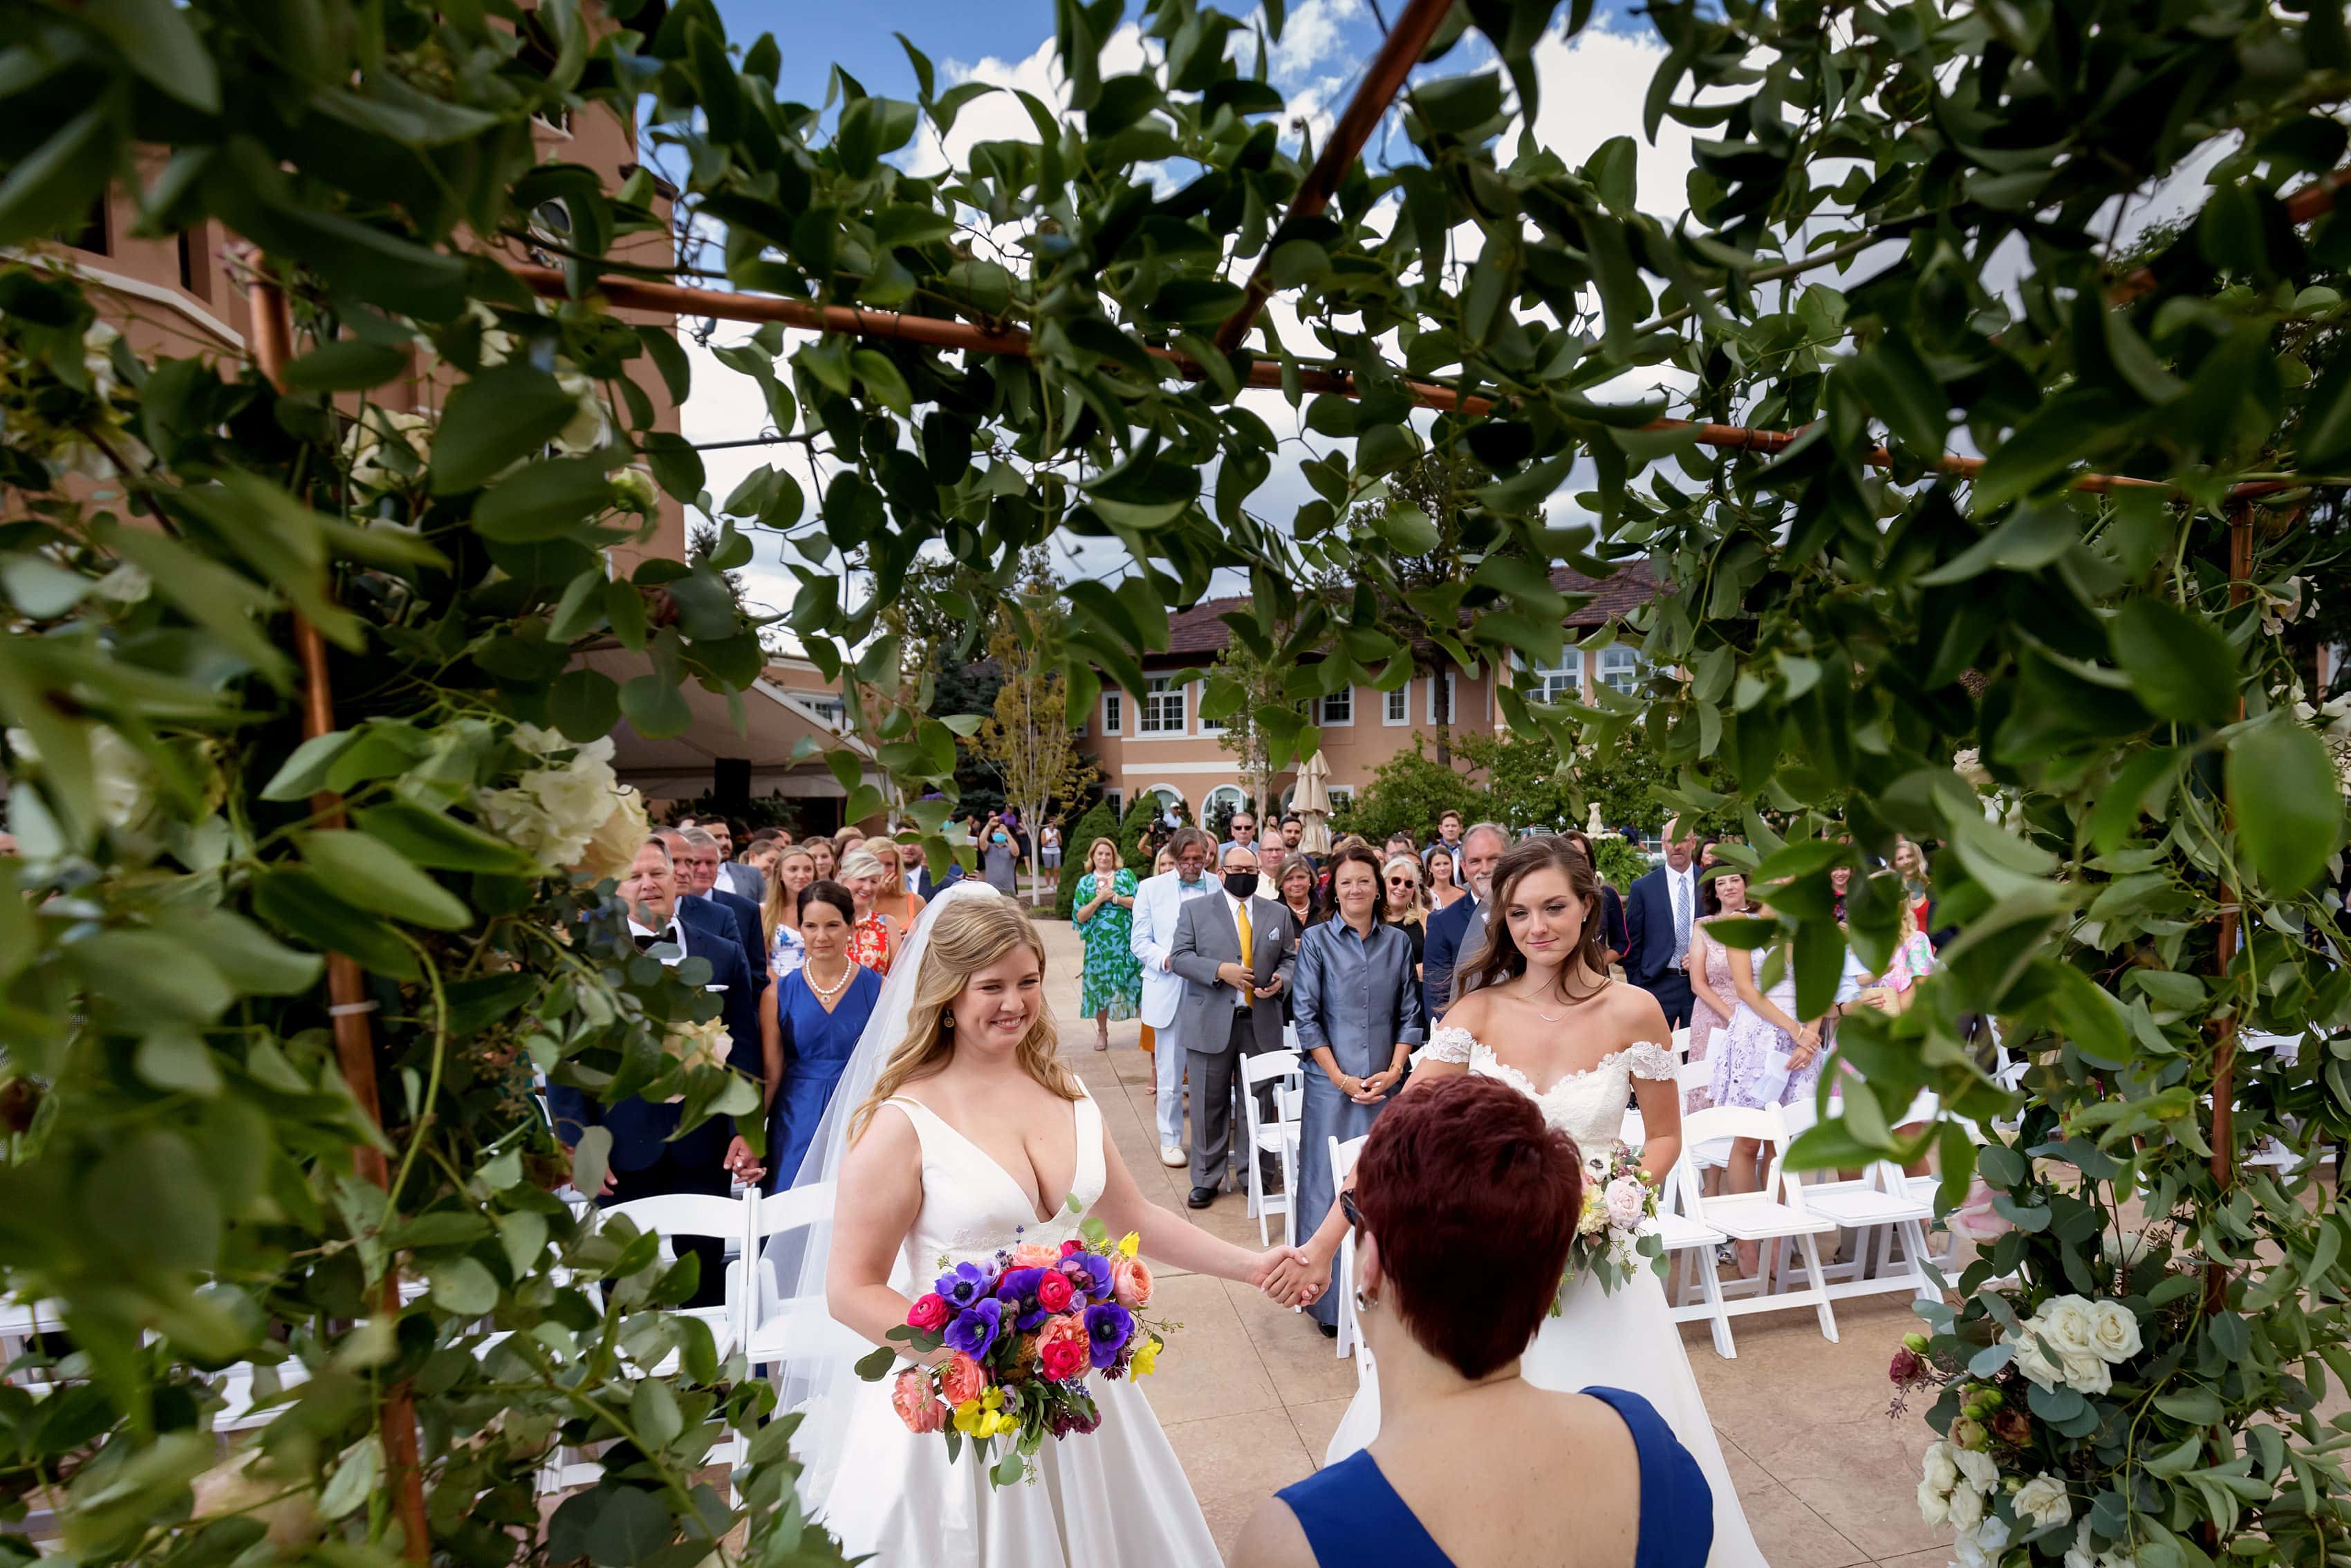 wedding ceremony with two brides at The Broadmoor in Colorado Springs, Colorado